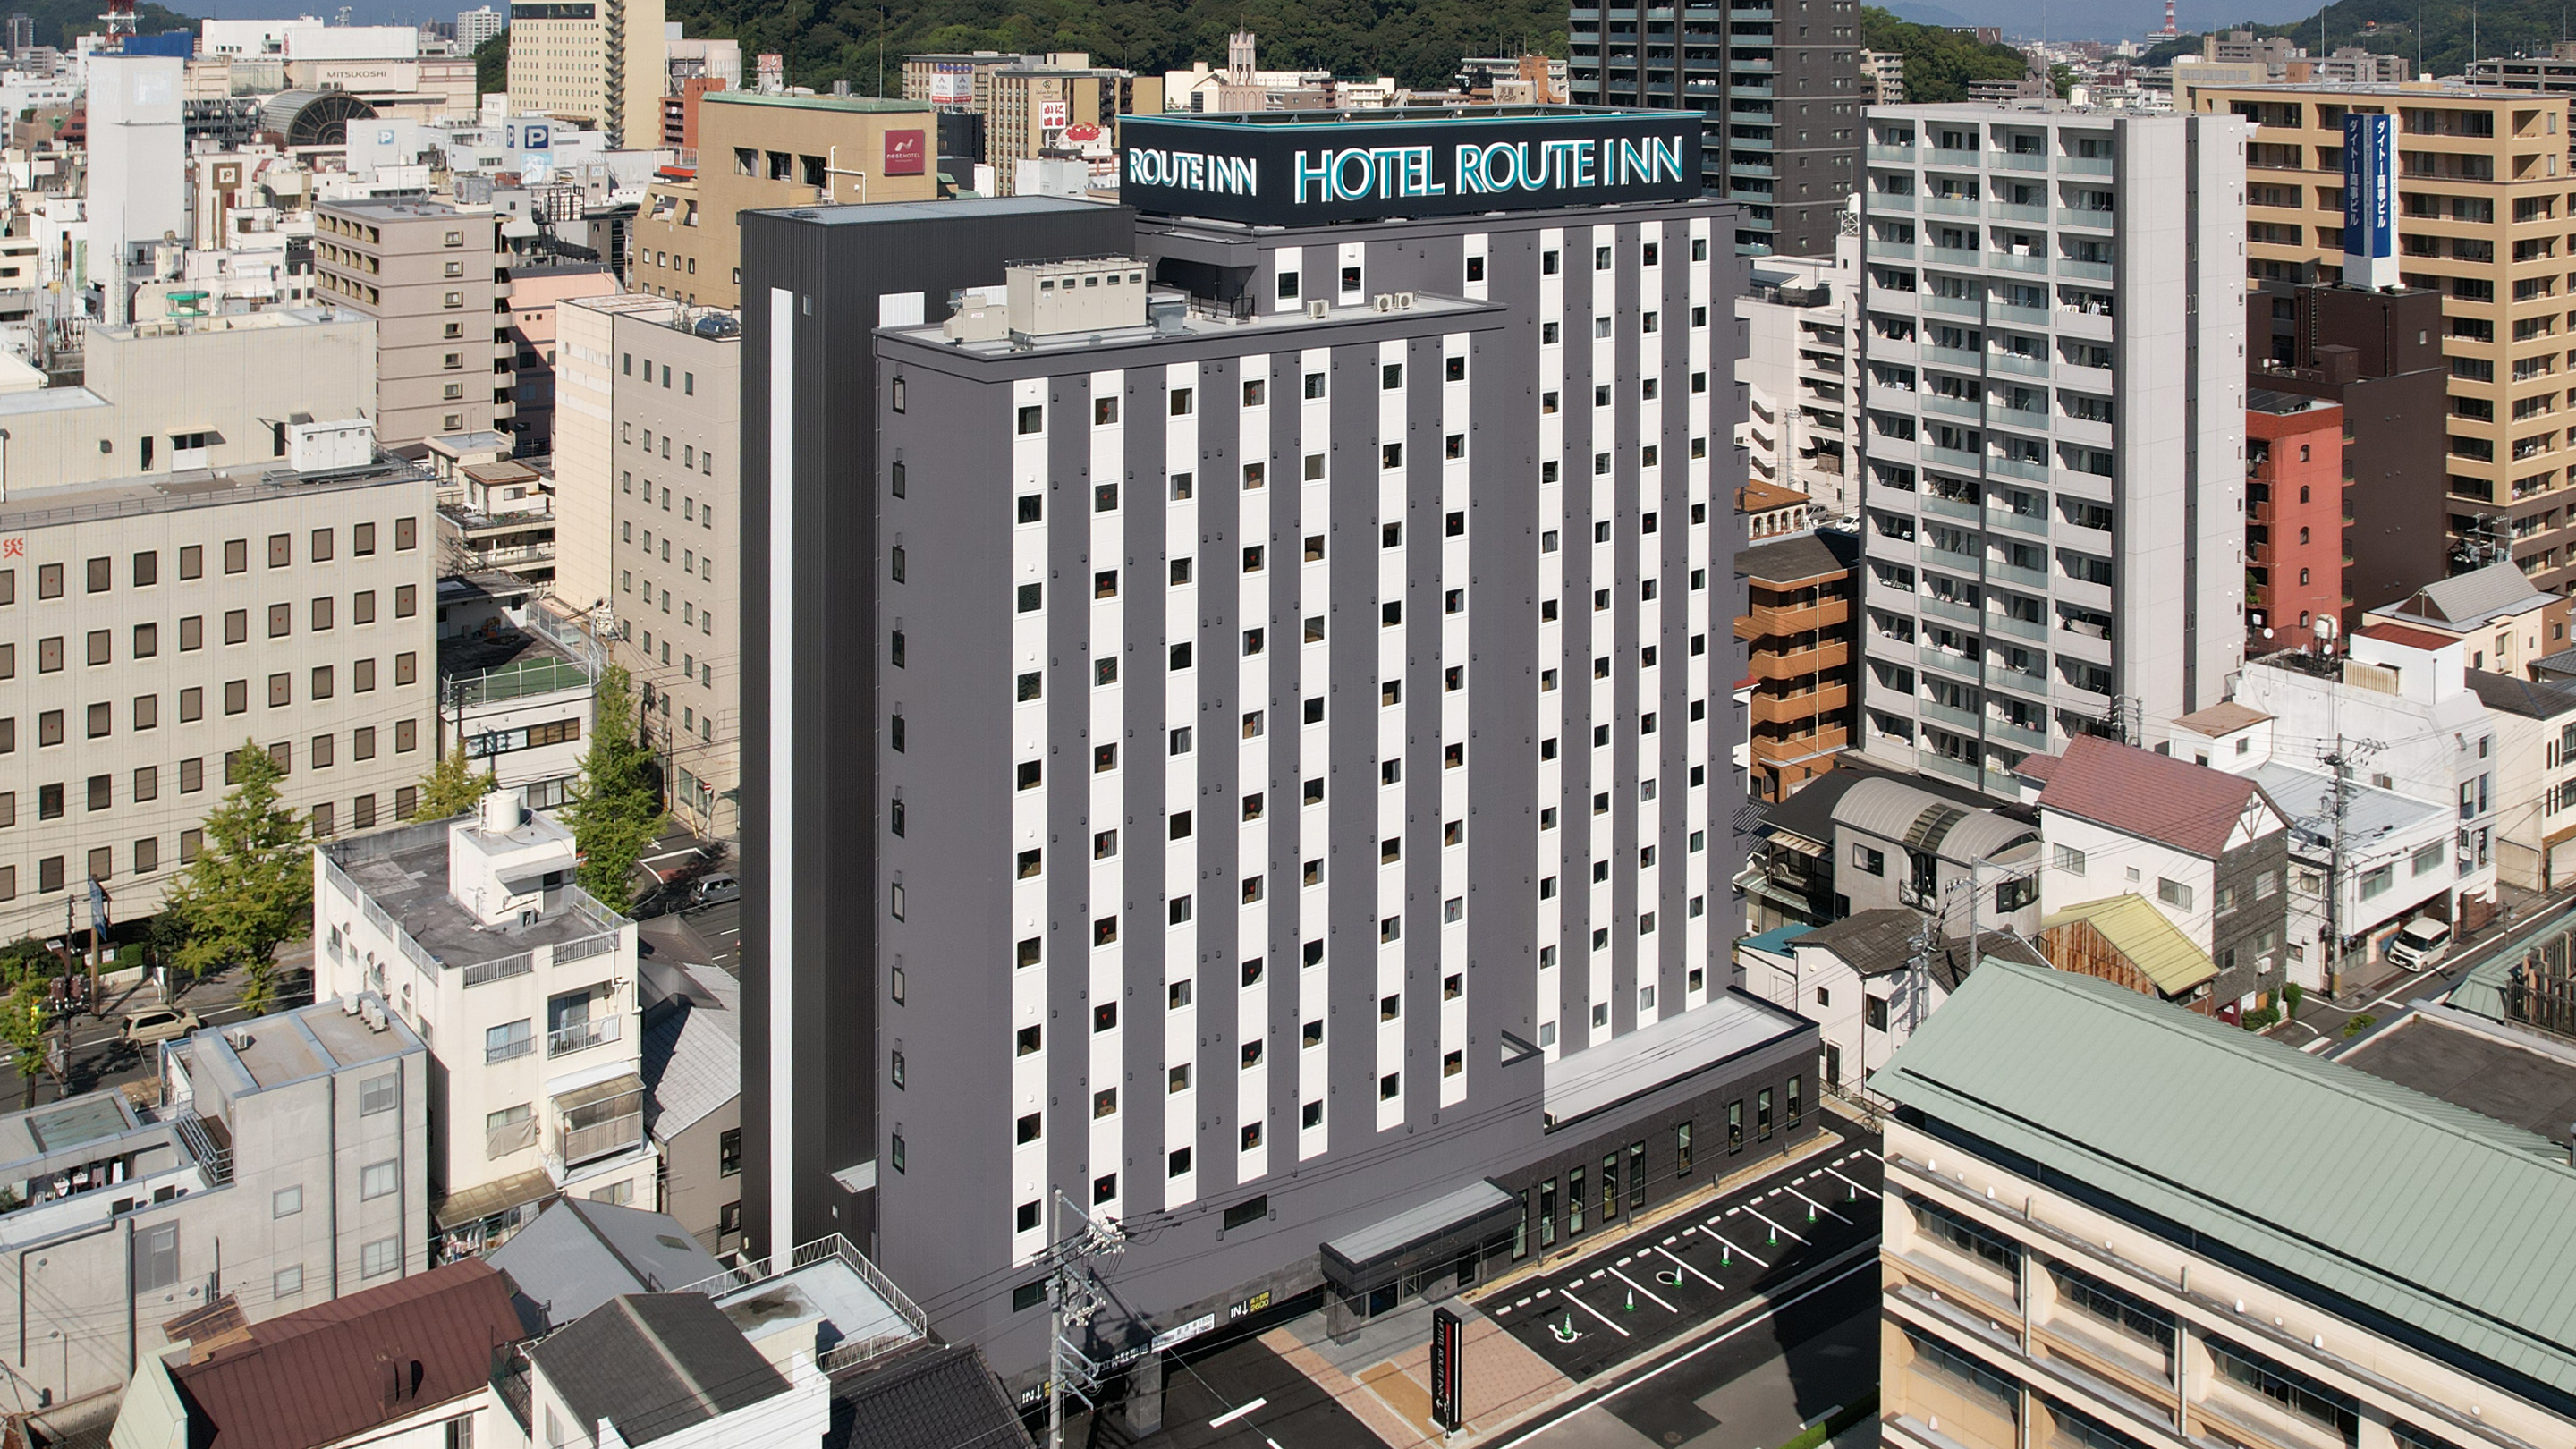 松山勝山通 Route Inn 飯店